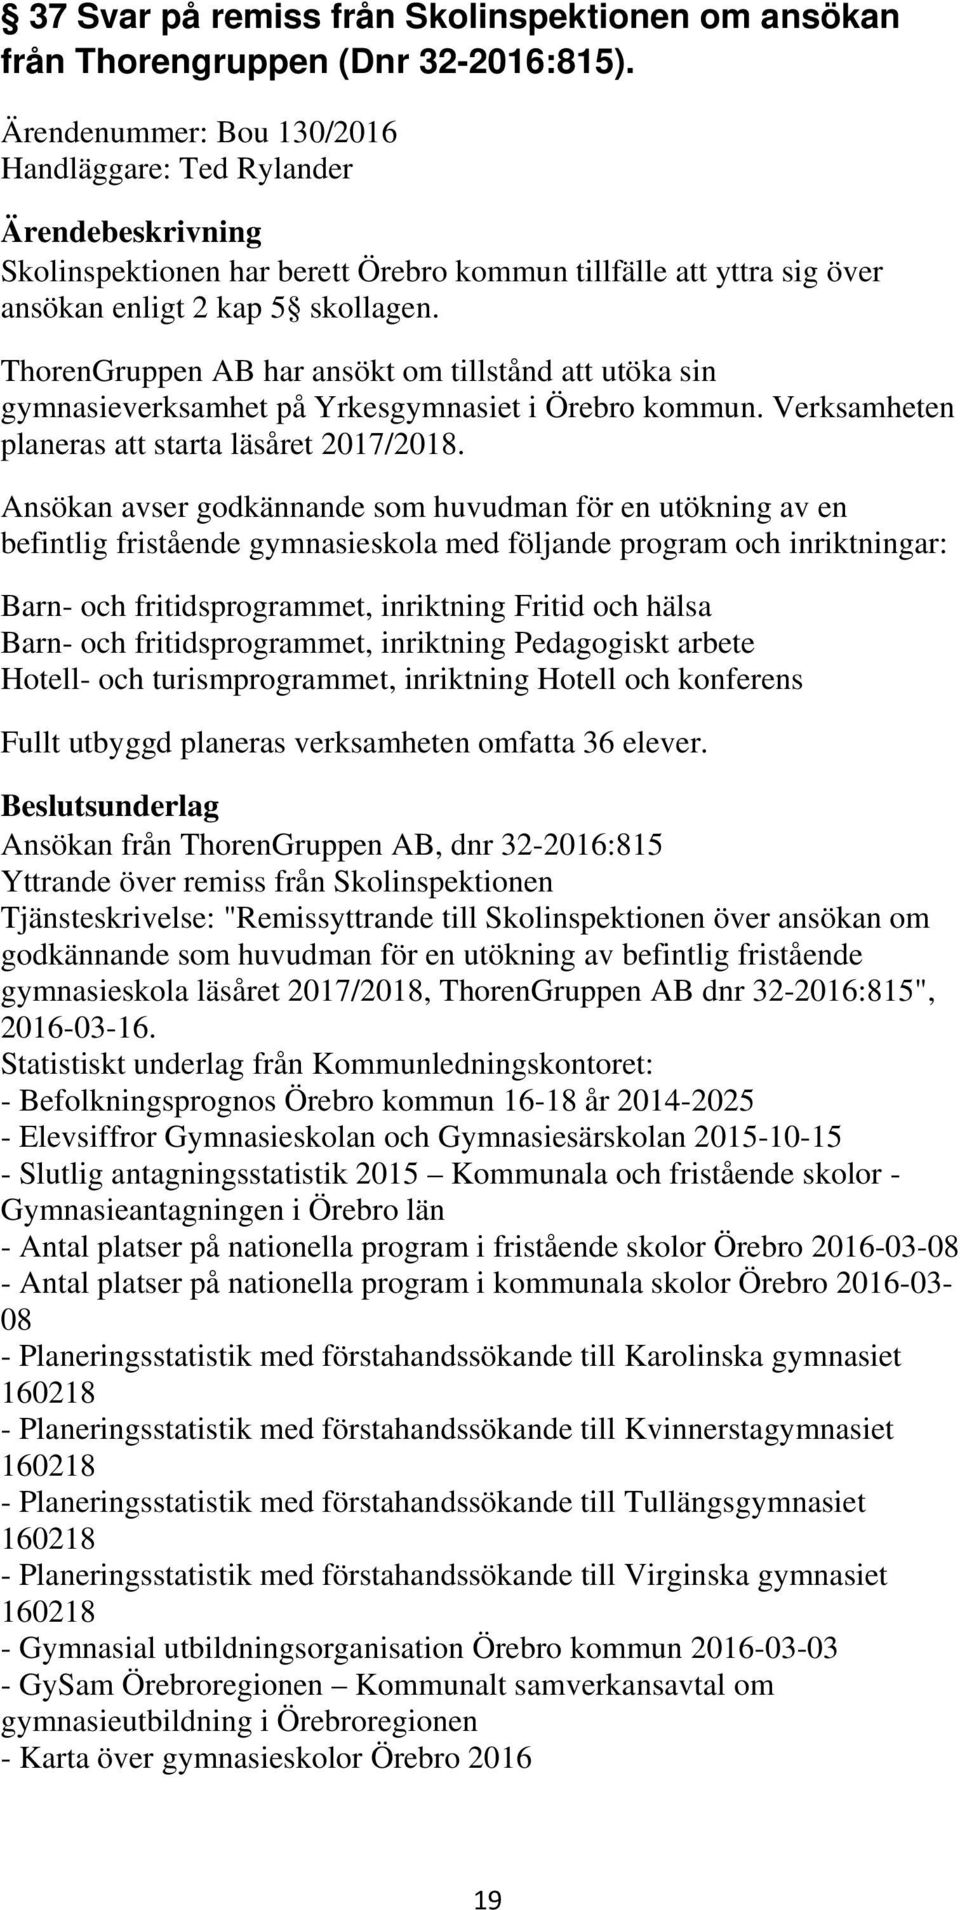 ThorenGruppen AB har ansökt om tillstånd att utöka sin gymnasieverksamhet på Yrkesgymnasiet i Örebro kommun. Verksamheten planeras att starta läsåret 2017/2018.